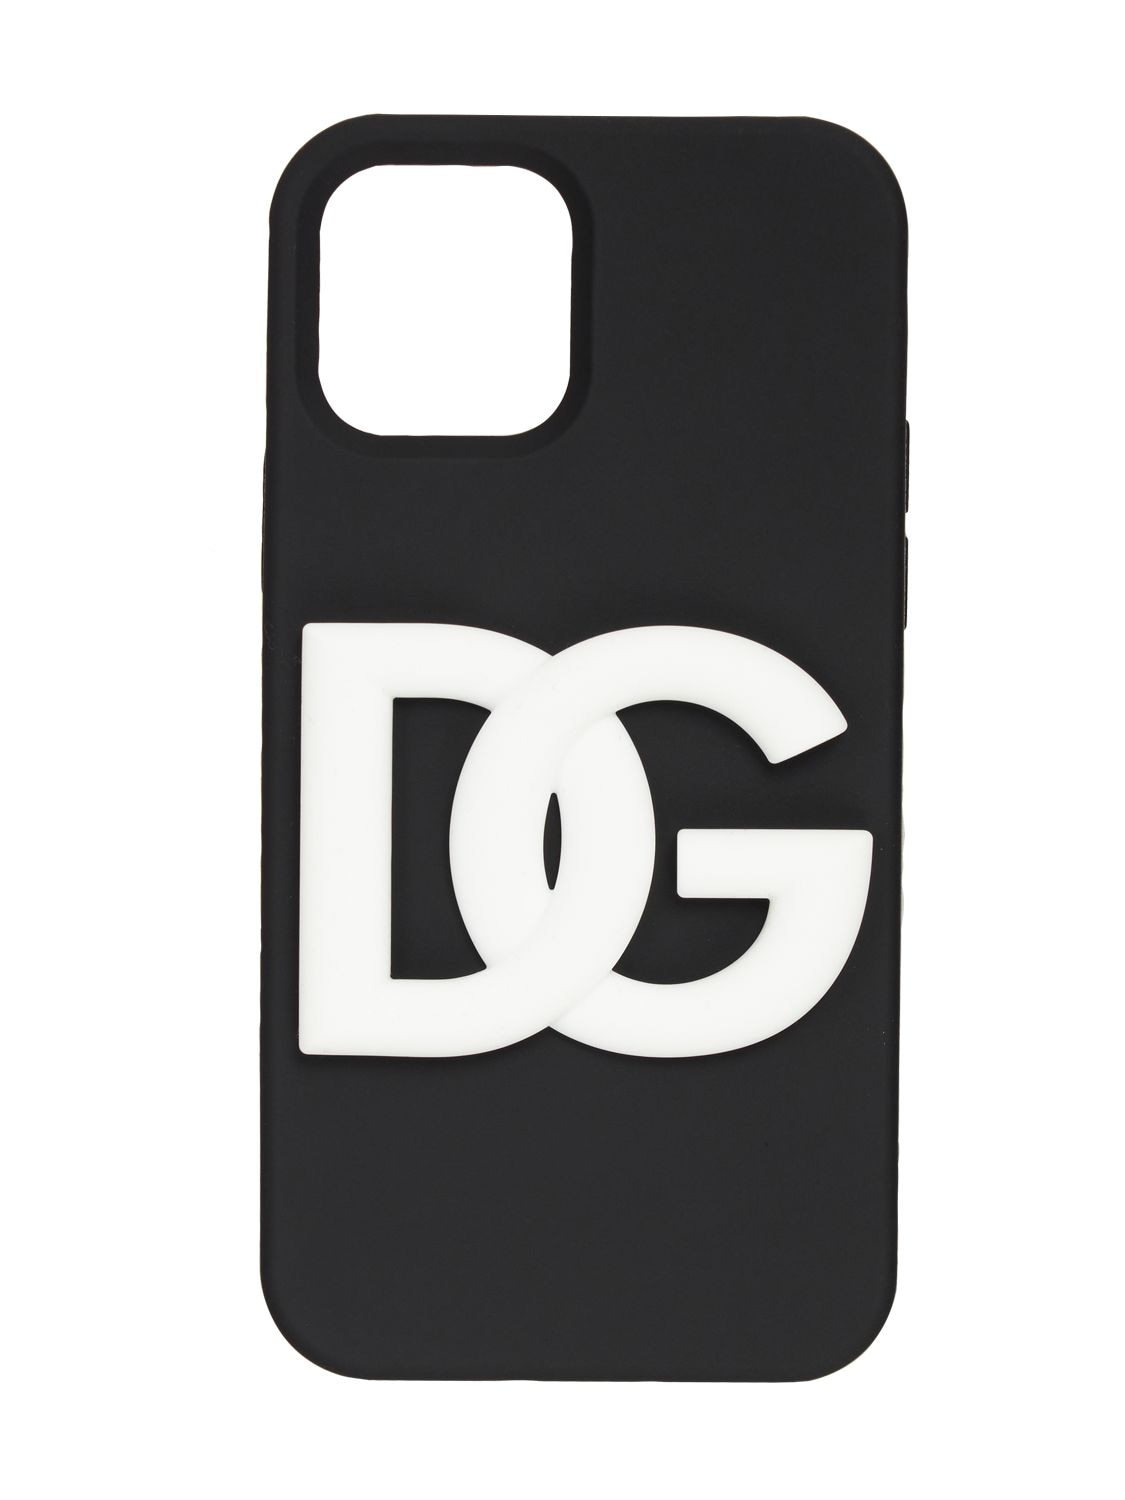 Dg Iphone 12 ケース